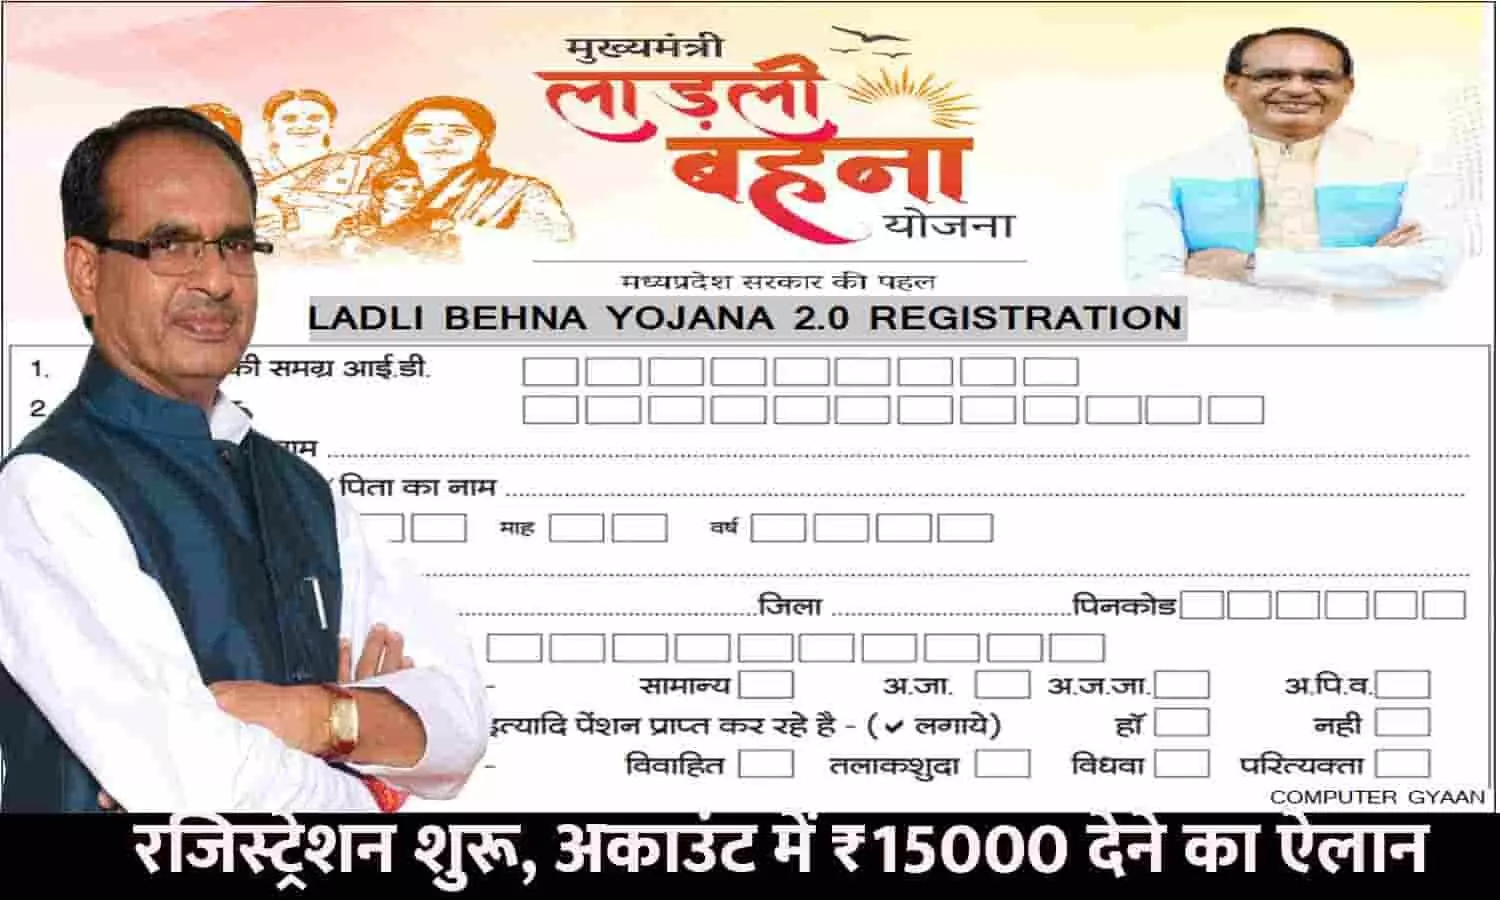 Ladli Behna Yojana 2.0 New Registration In MP: रजिस्ट्रेशन शुरू, अकाउंट में ₹15000 देने का ऐलान